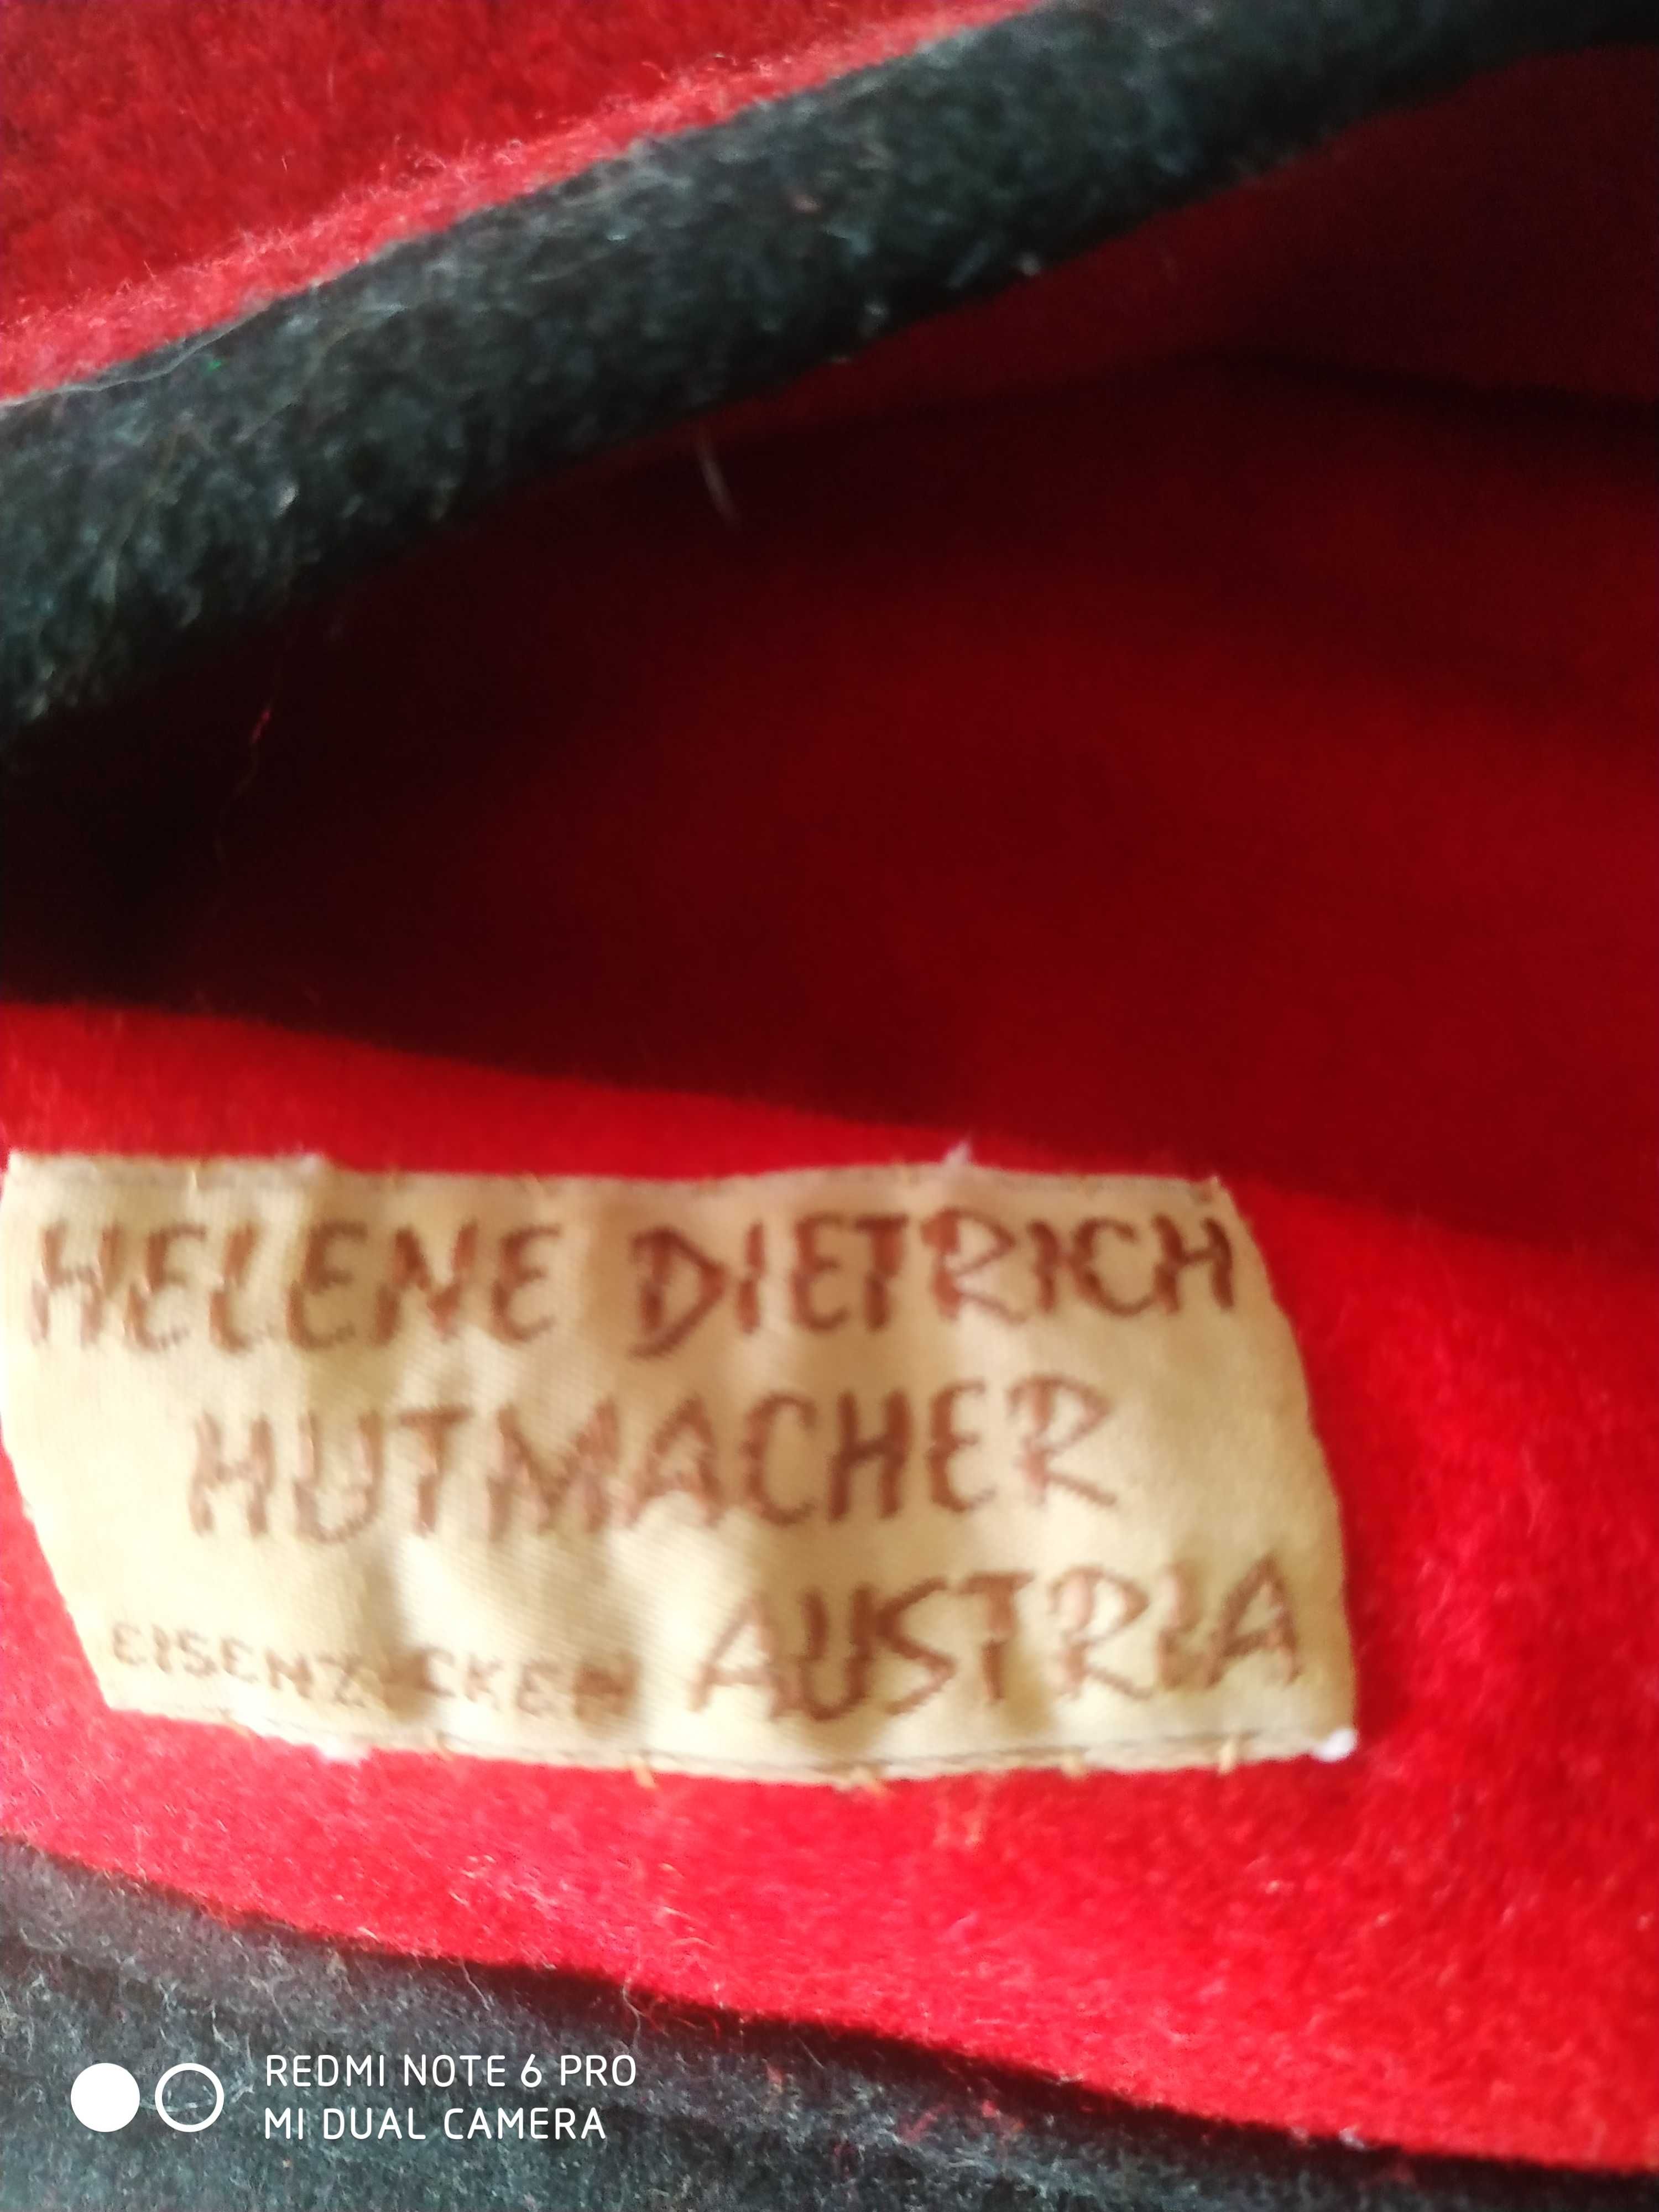 Вітажна шапка Helene Dietrich Австрія